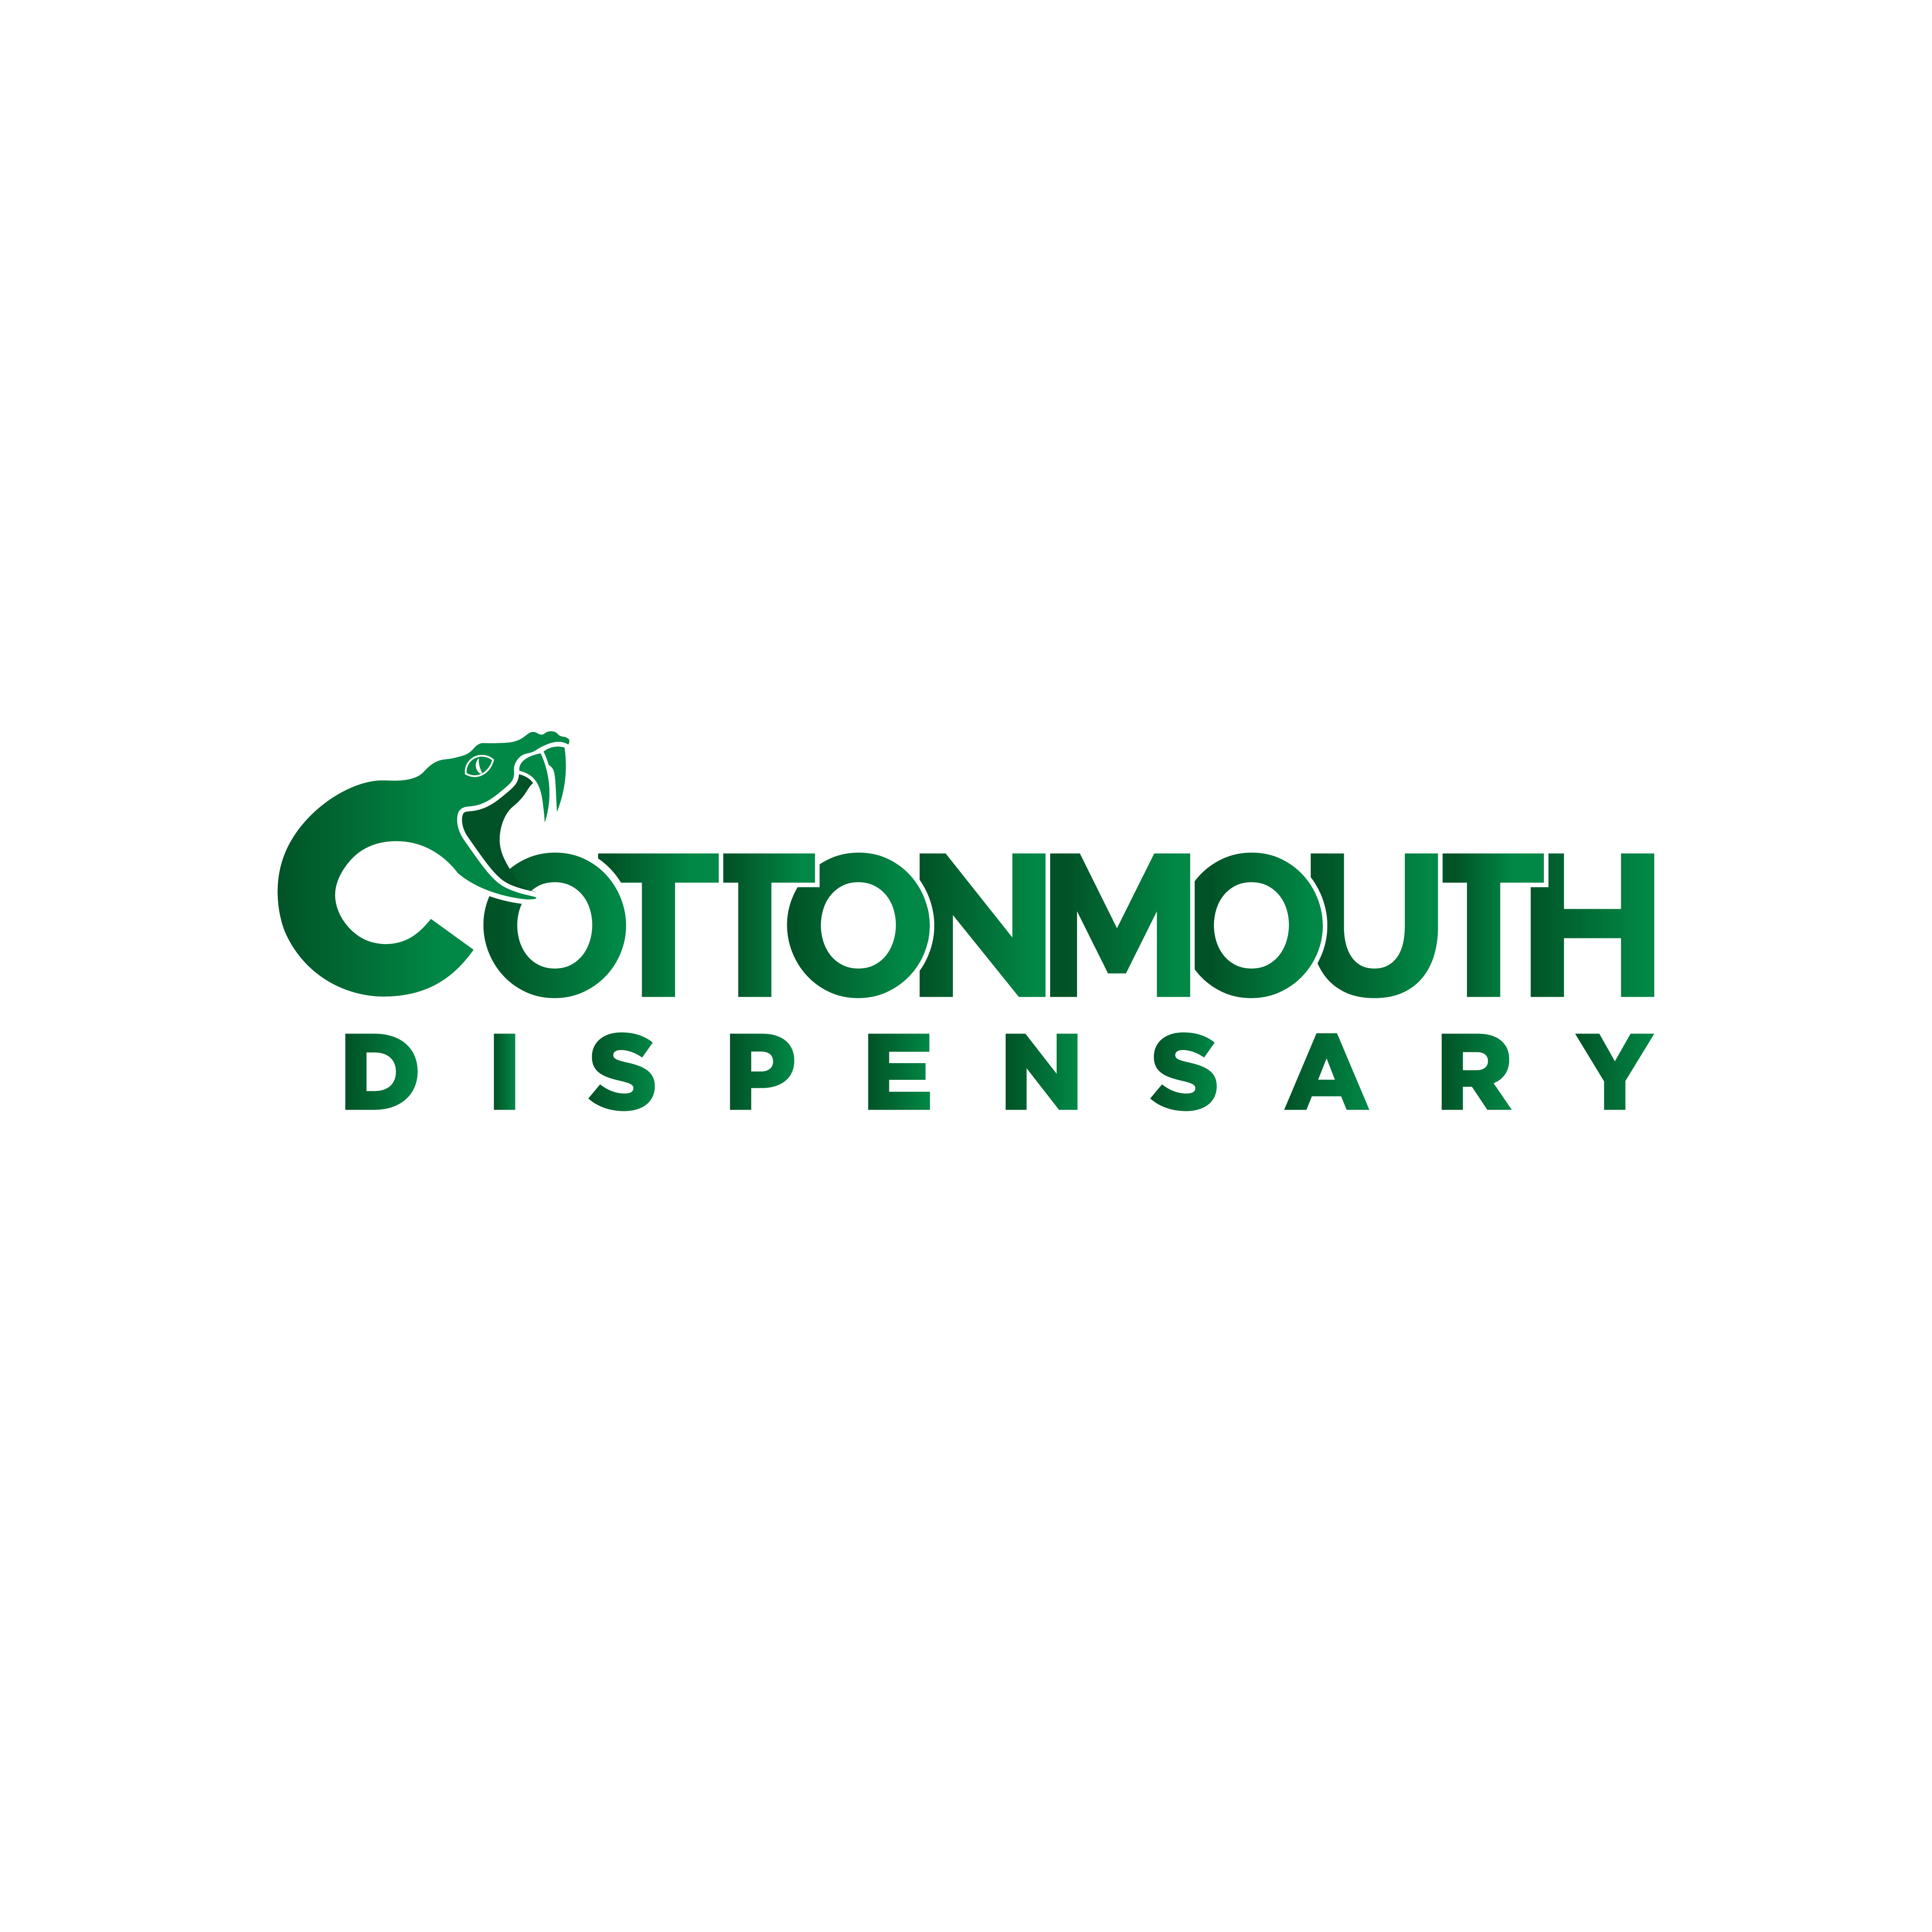 Cottonmouth Dispensary (Rec) logo